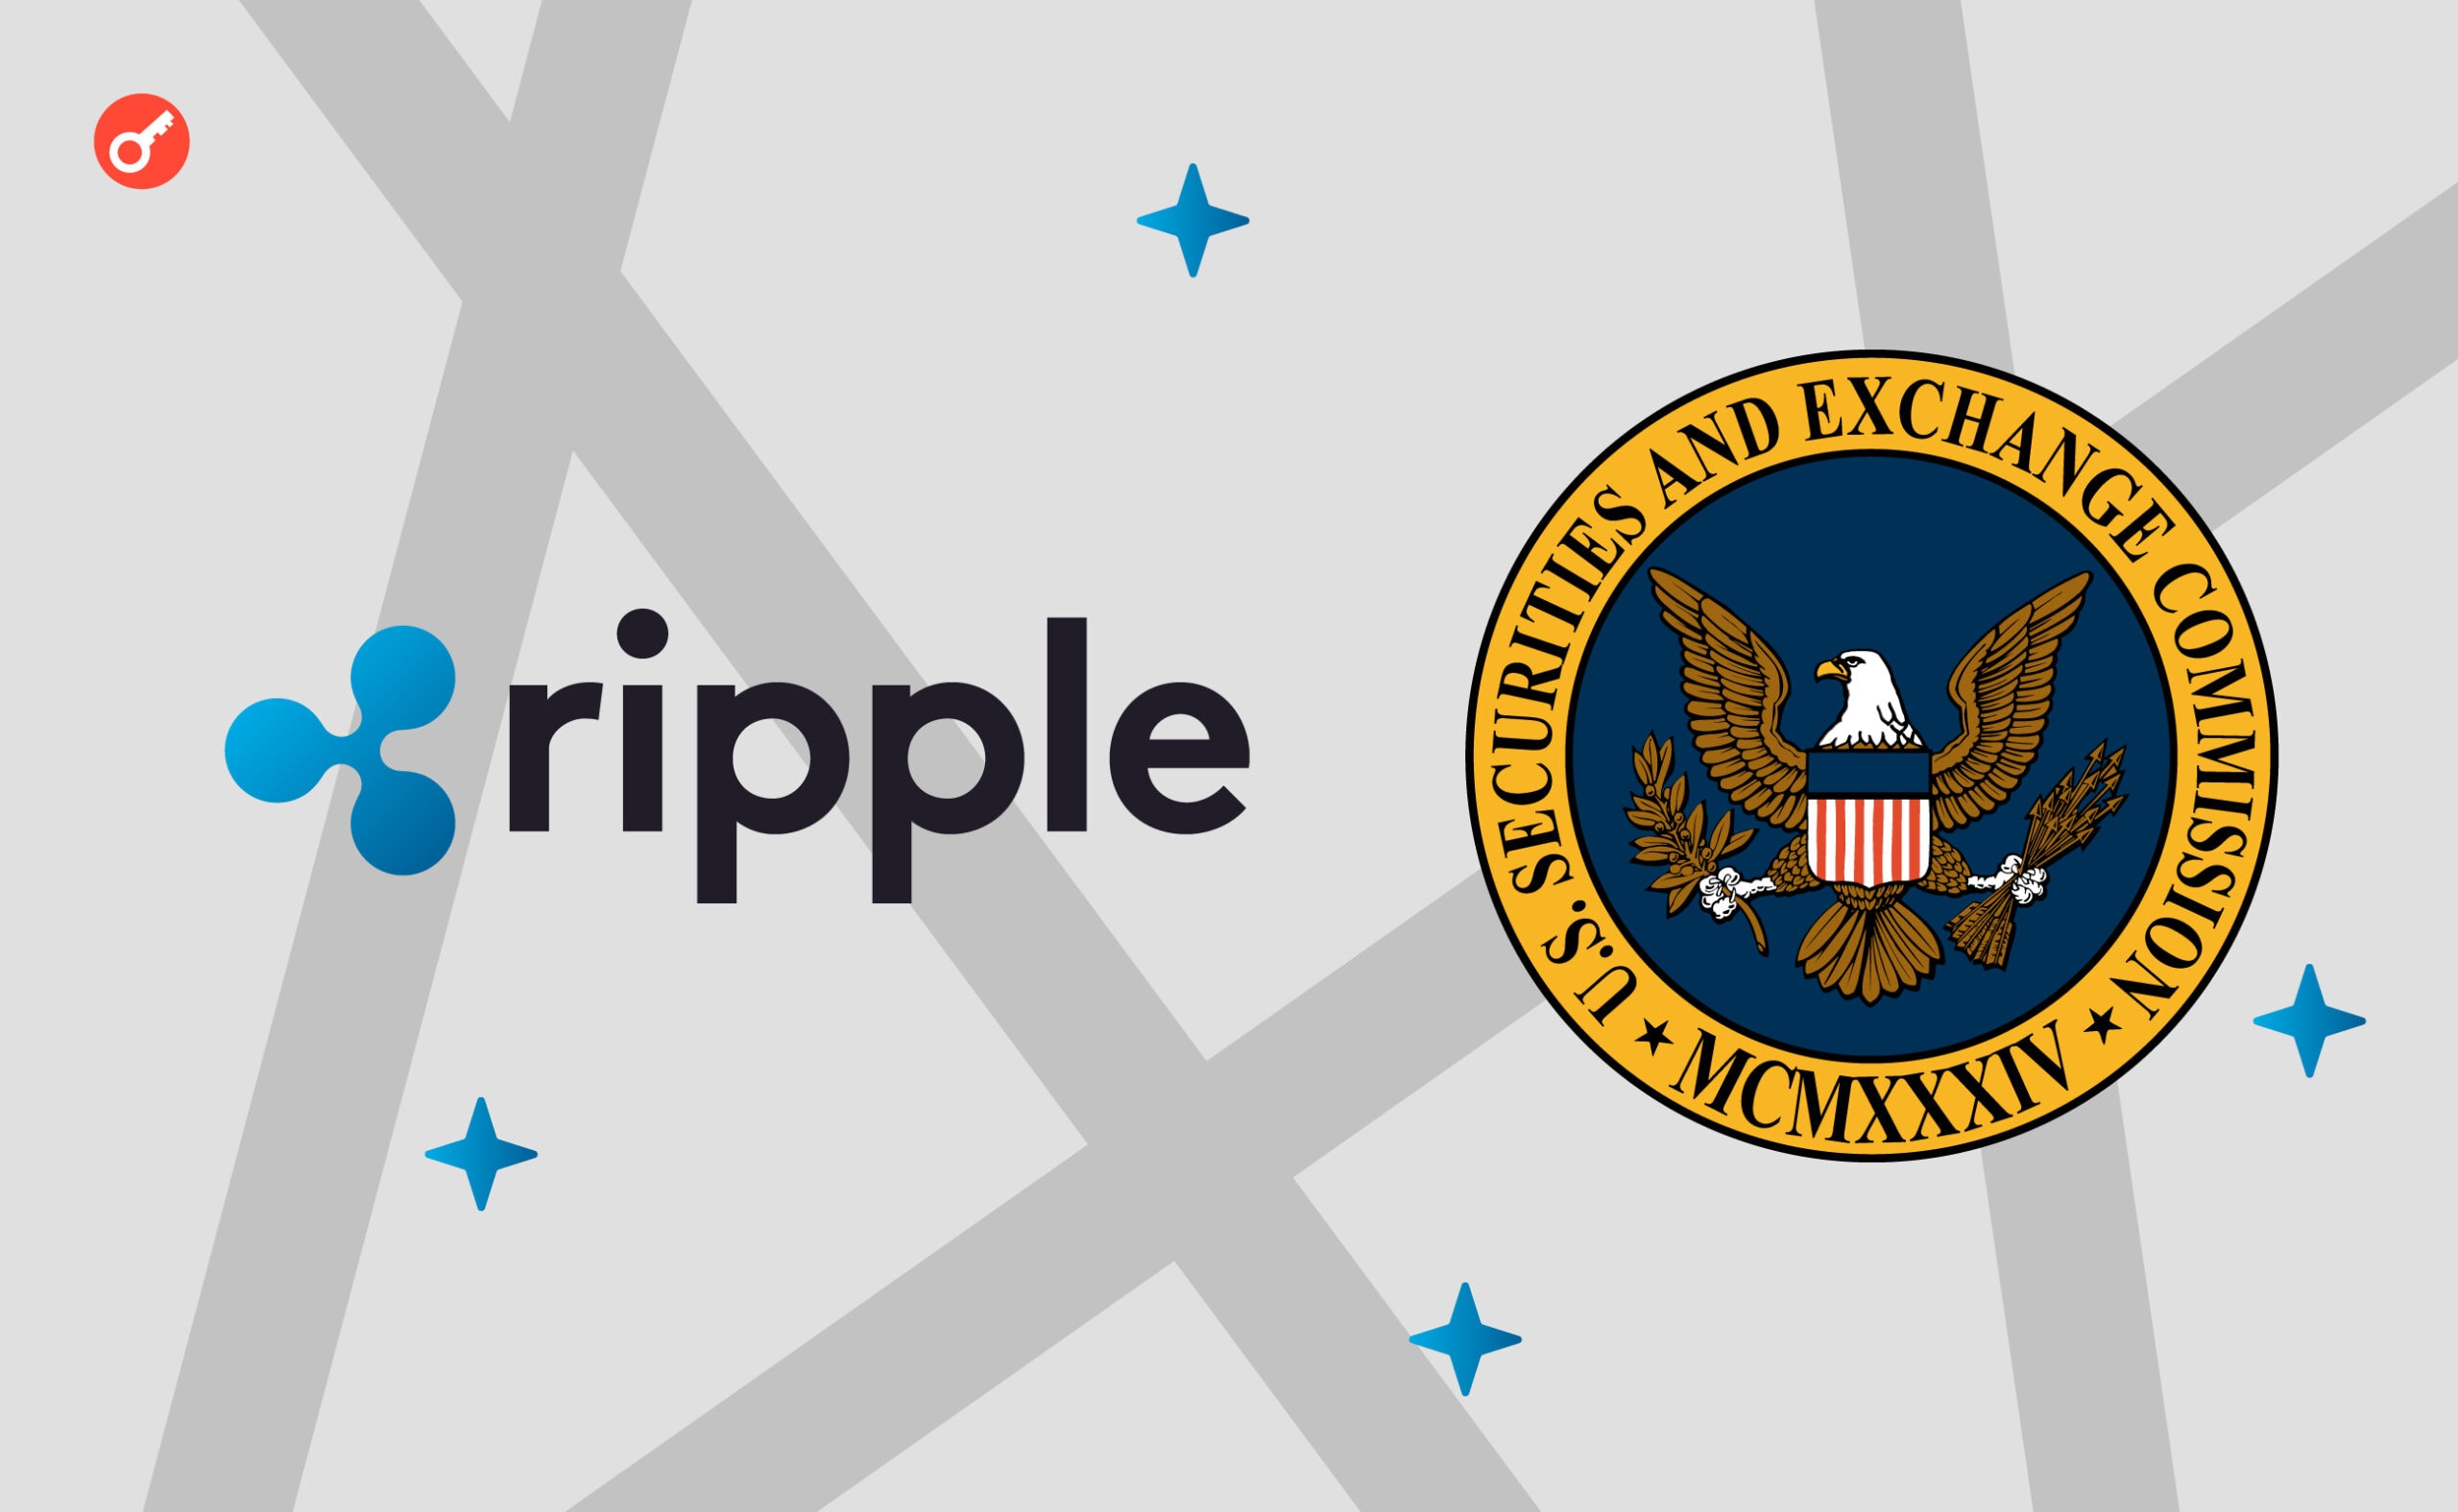 SEC назвала «пощечиной» для властей США отказ Ripple выплатить $2 млрд. Заглавный коллаж новости.